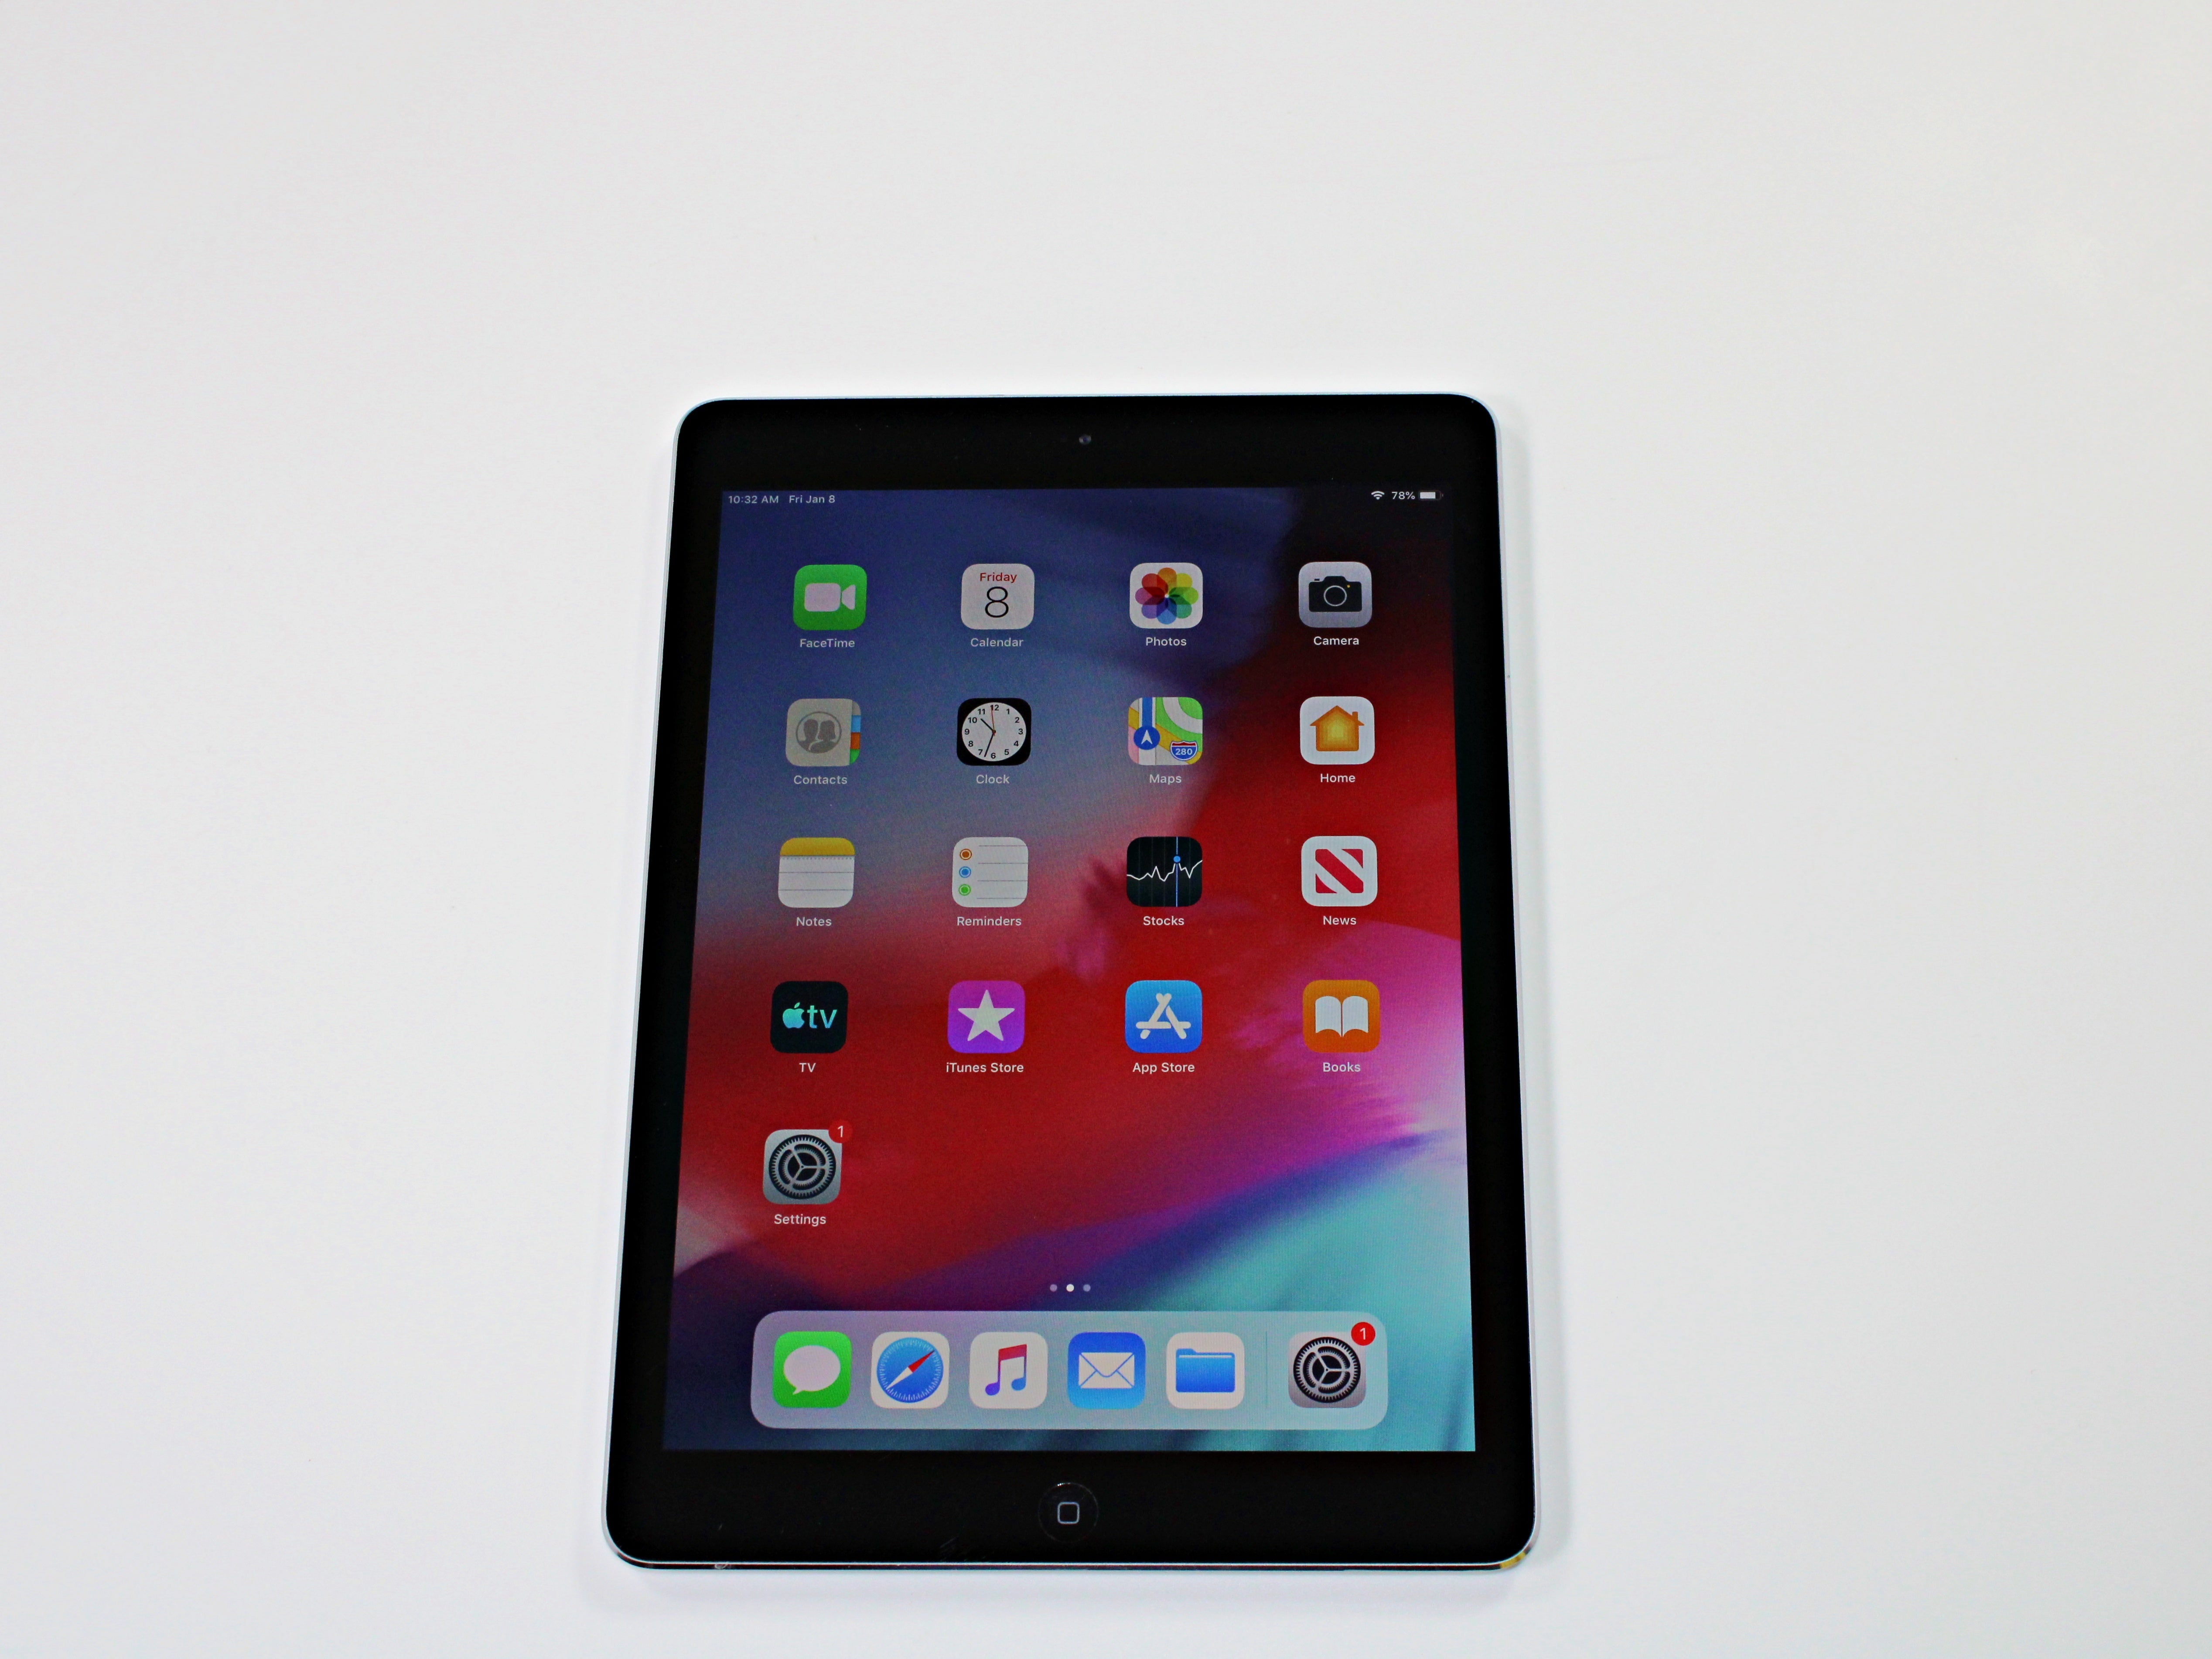 Buy Used & Refurbished Apple iPad Air 2 with Wi-Fi 16GB - Black